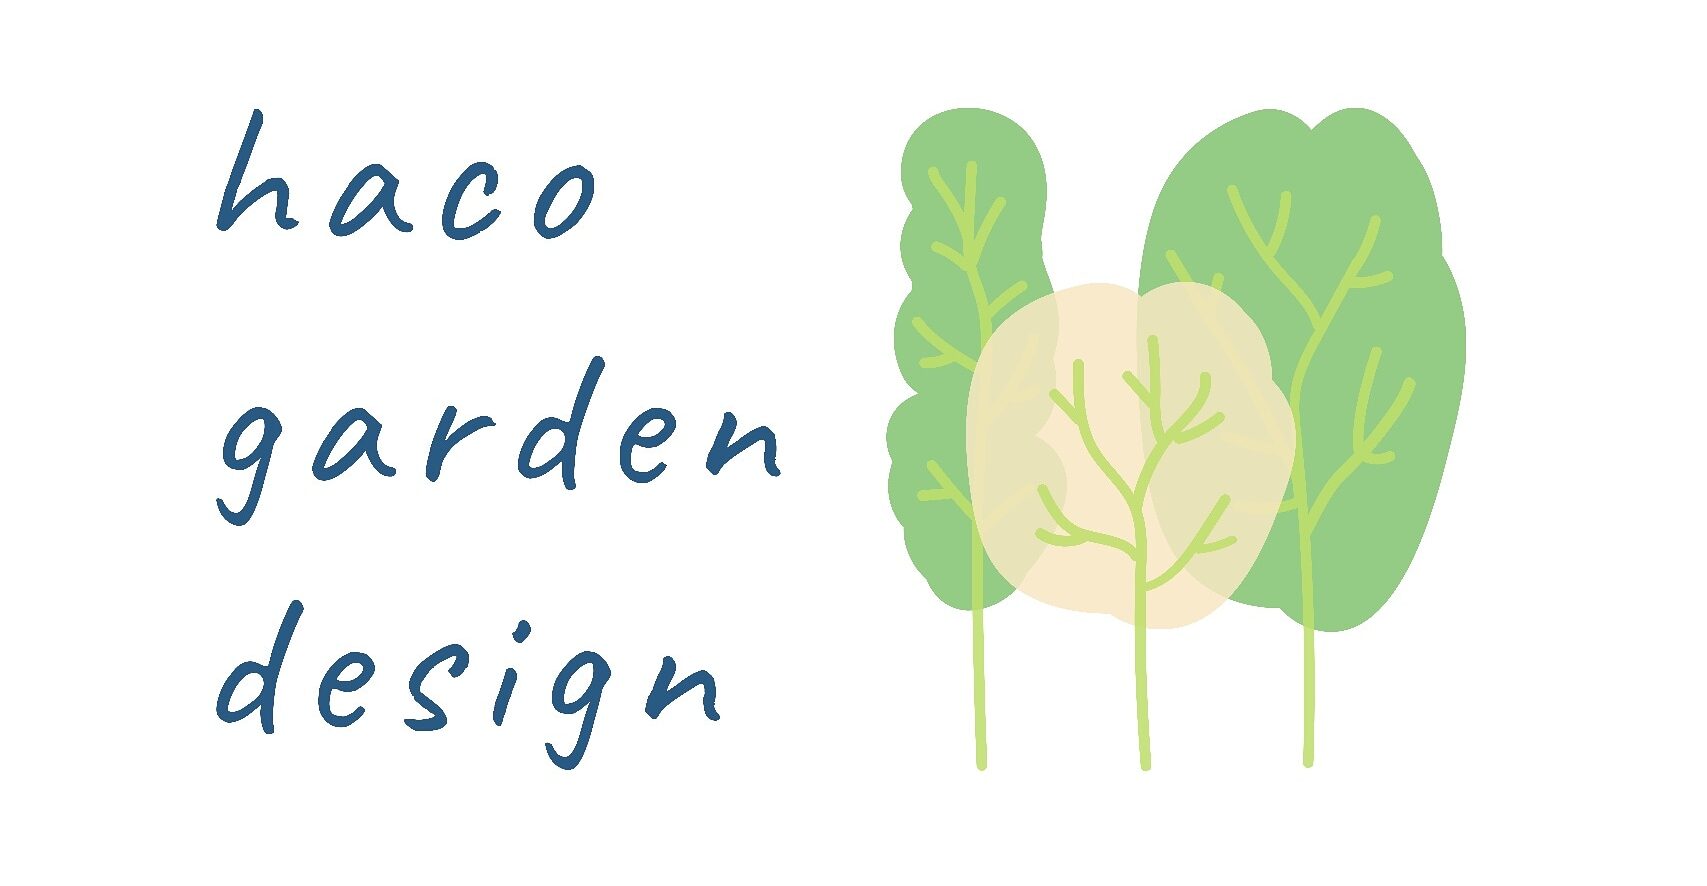 haco garden design